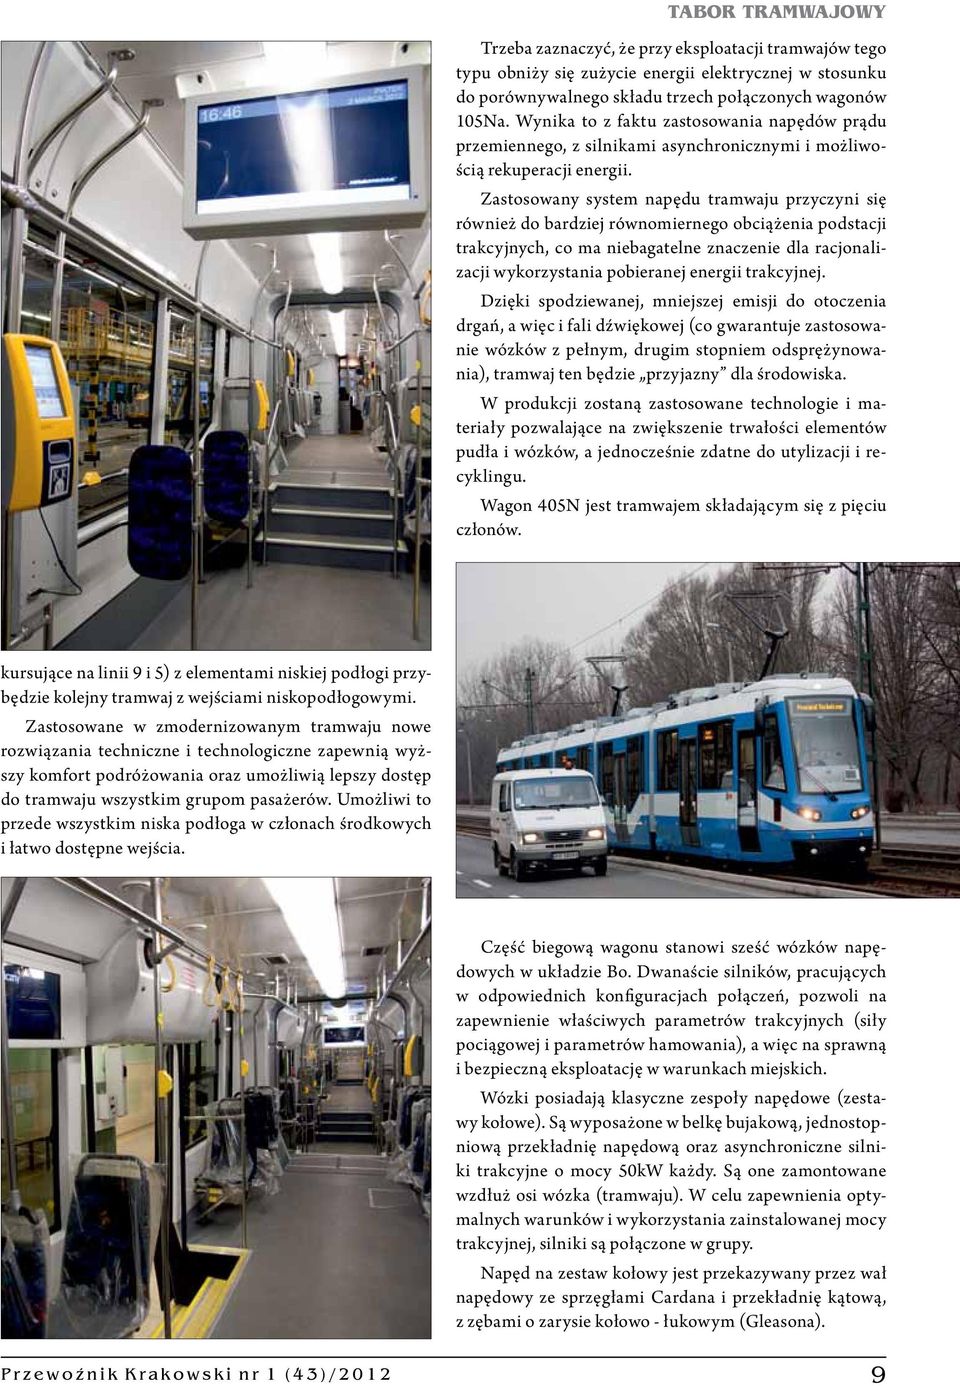 Zastosowany system napędu tramwaju przyczyni się również do bardziej równomiernego obciążenia podstacji trakcyjnych, co ma niebagatelne znaczenie dla racjonalizacji wykorzystania pobieranej energii